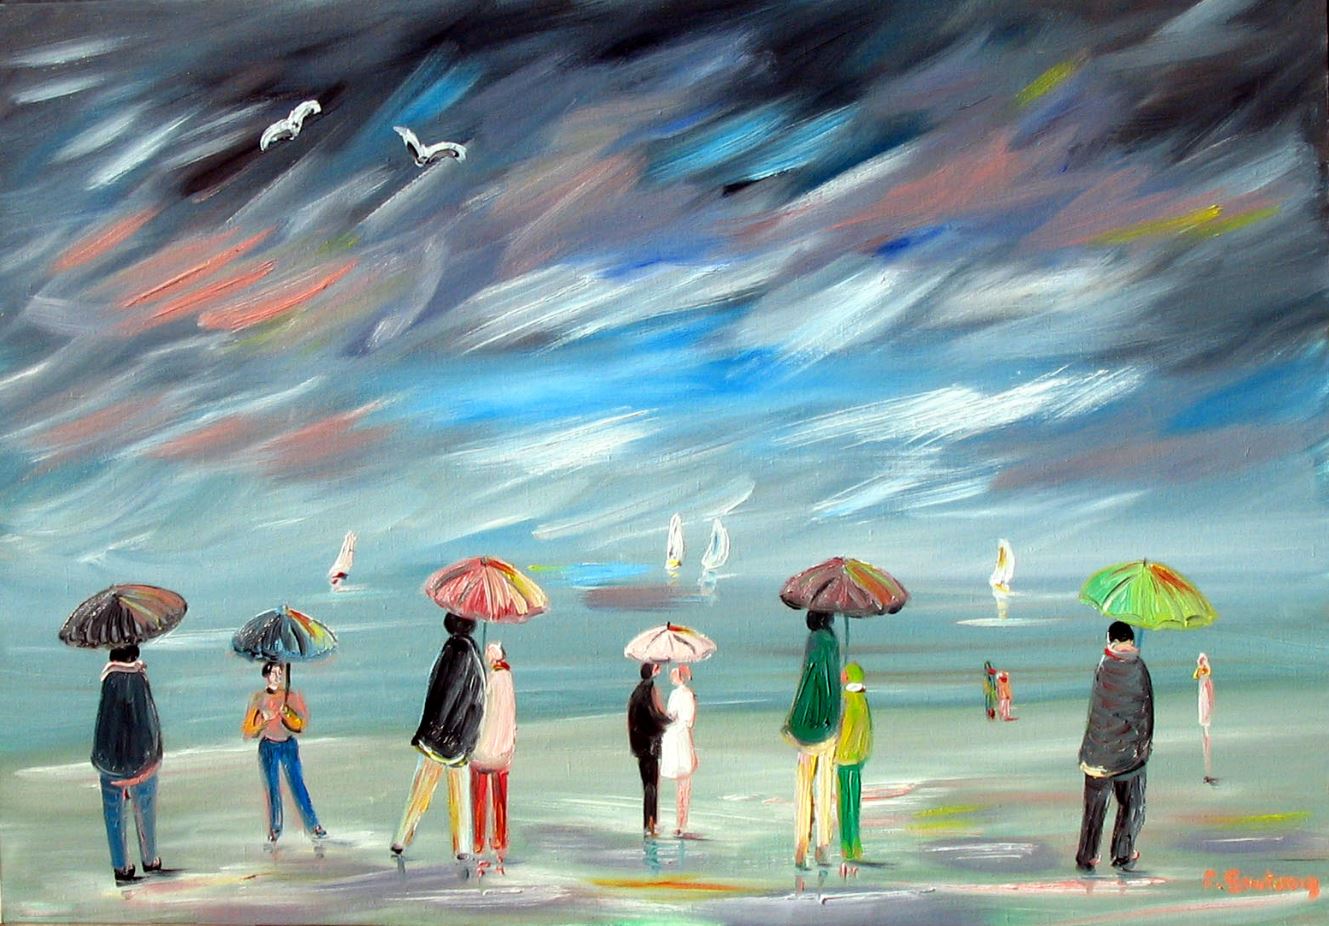 Artwork for sale René Boutang Collonges la rouge Multicoloured umbrellas